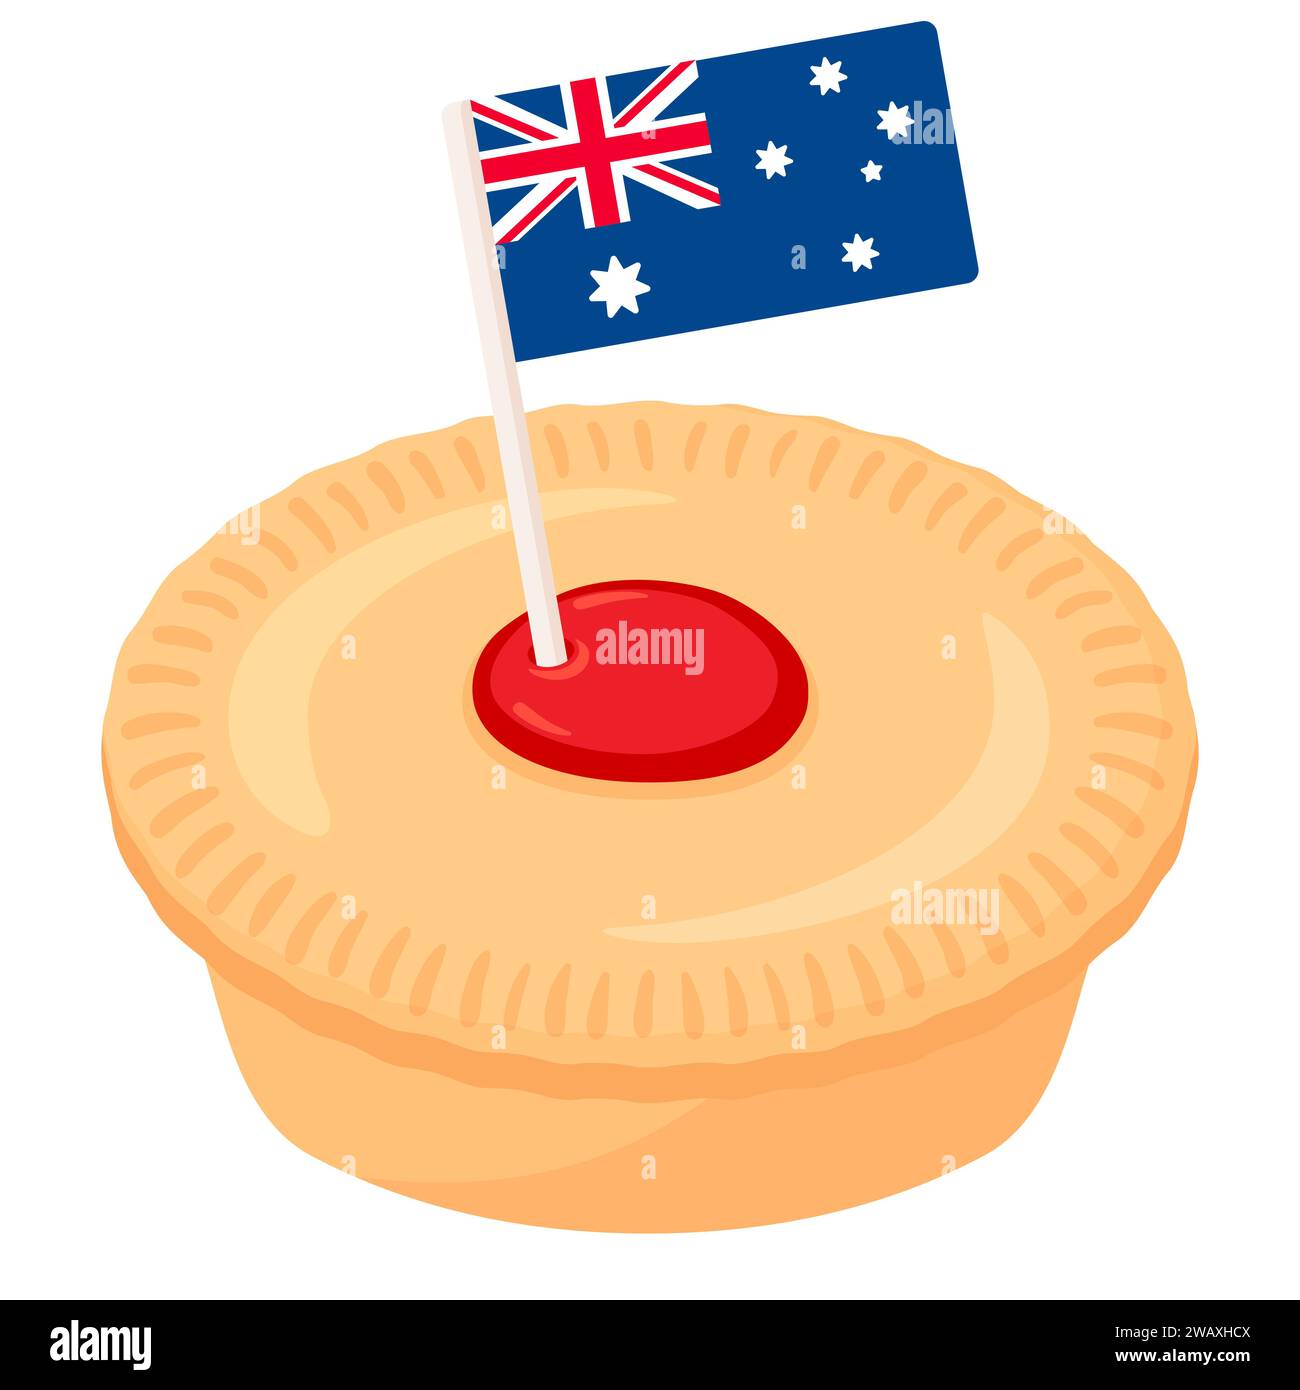 Cartone animato Aussie Meat Pie Drawing per l'Australia Day. Torta tradizionale con ripieno di manzo e bandiera australiana. Illustrazione grafica vettoriale isolata. Illustrazione Vettoriale